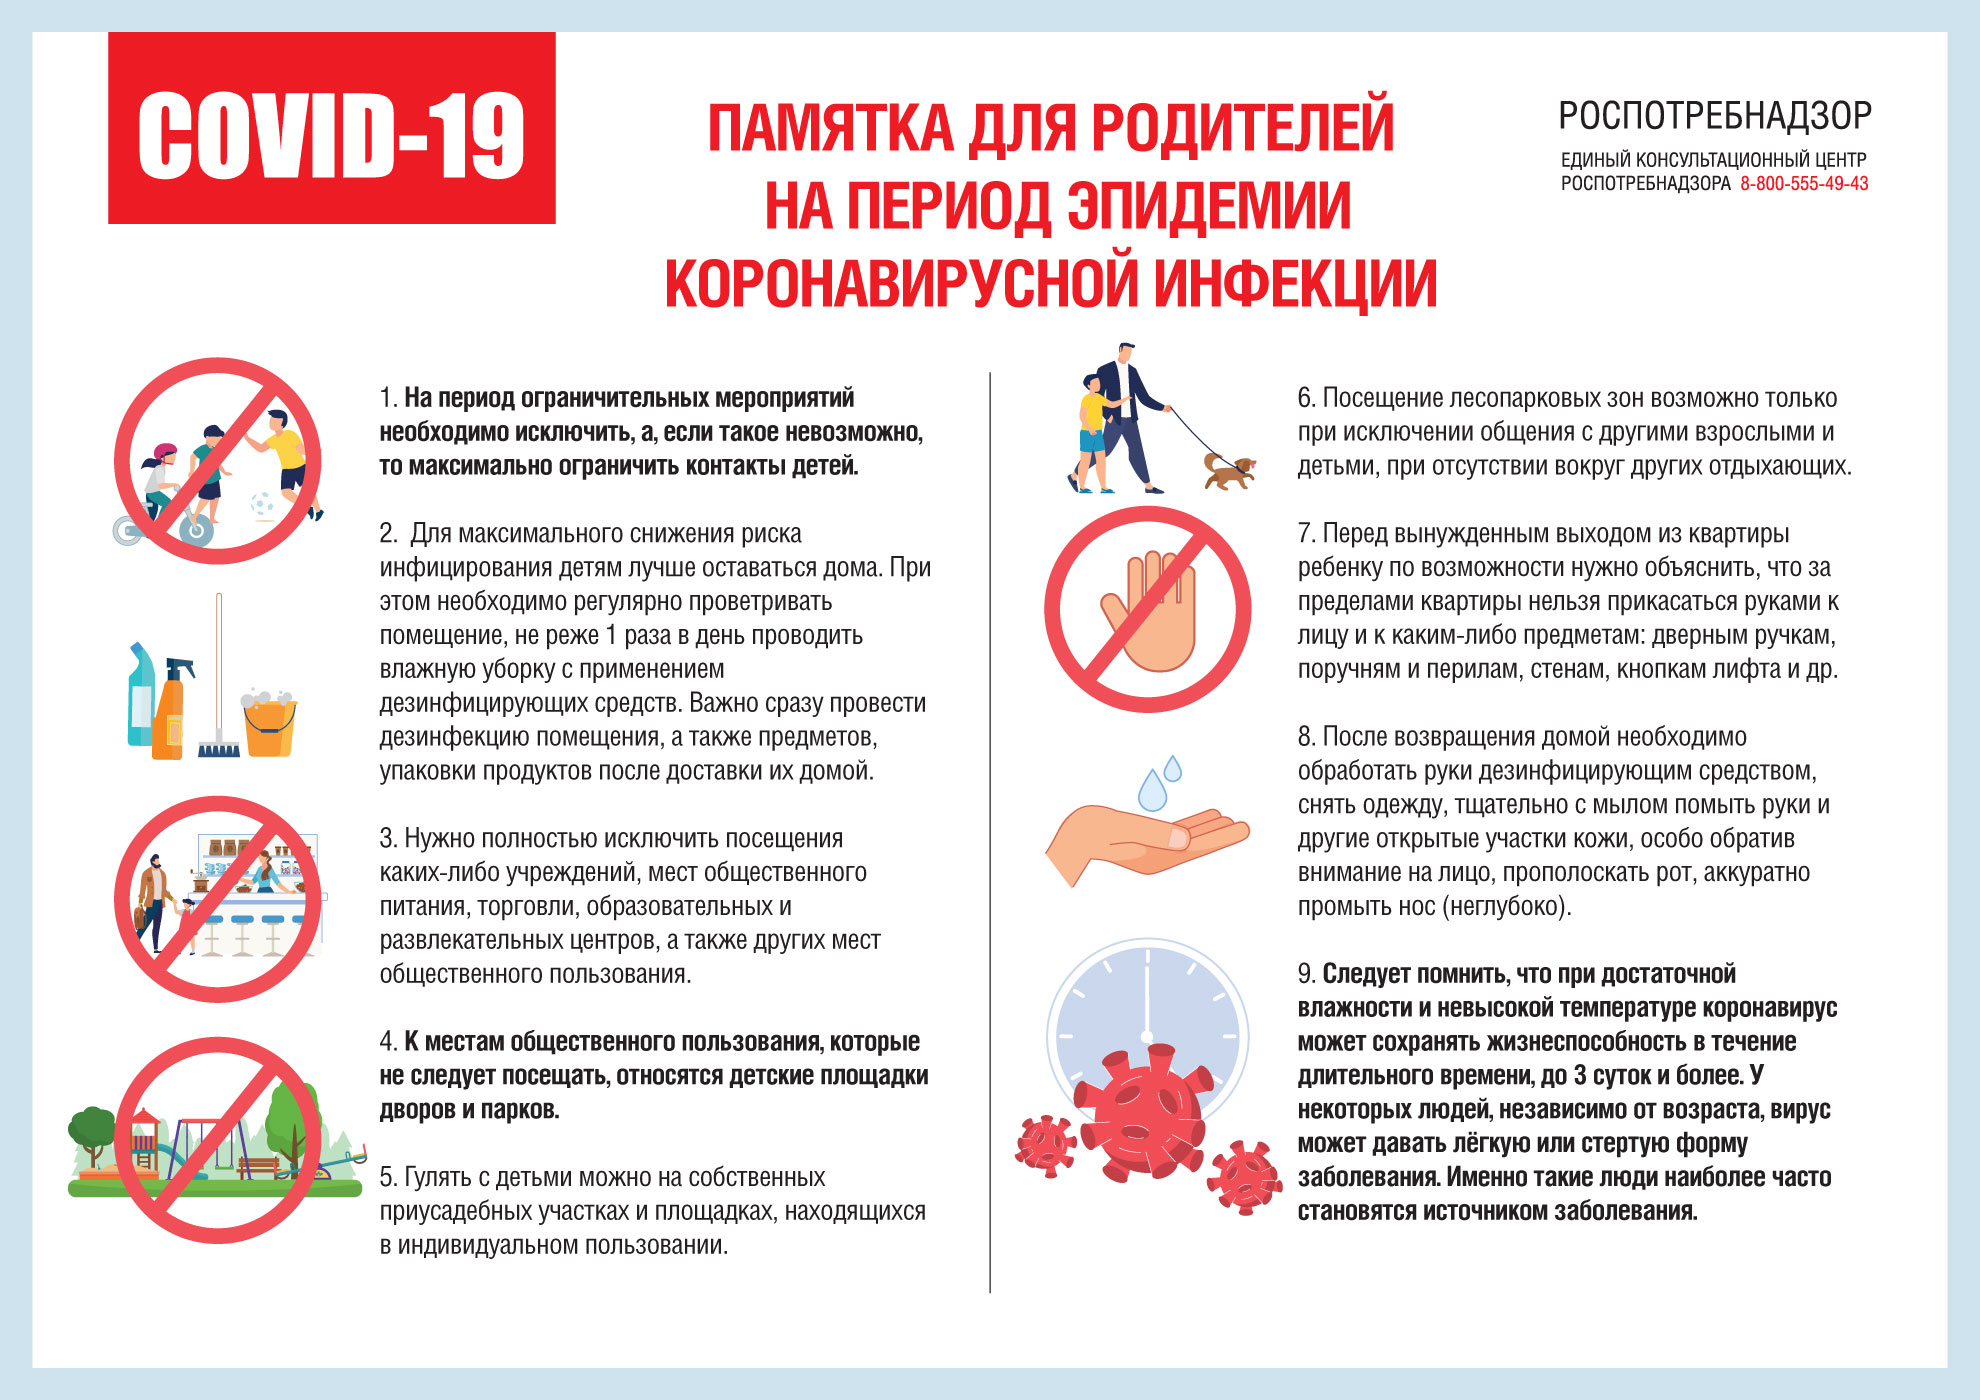 Роспотребнадзор опубликовал рекомендации для родителей на период эпидемии